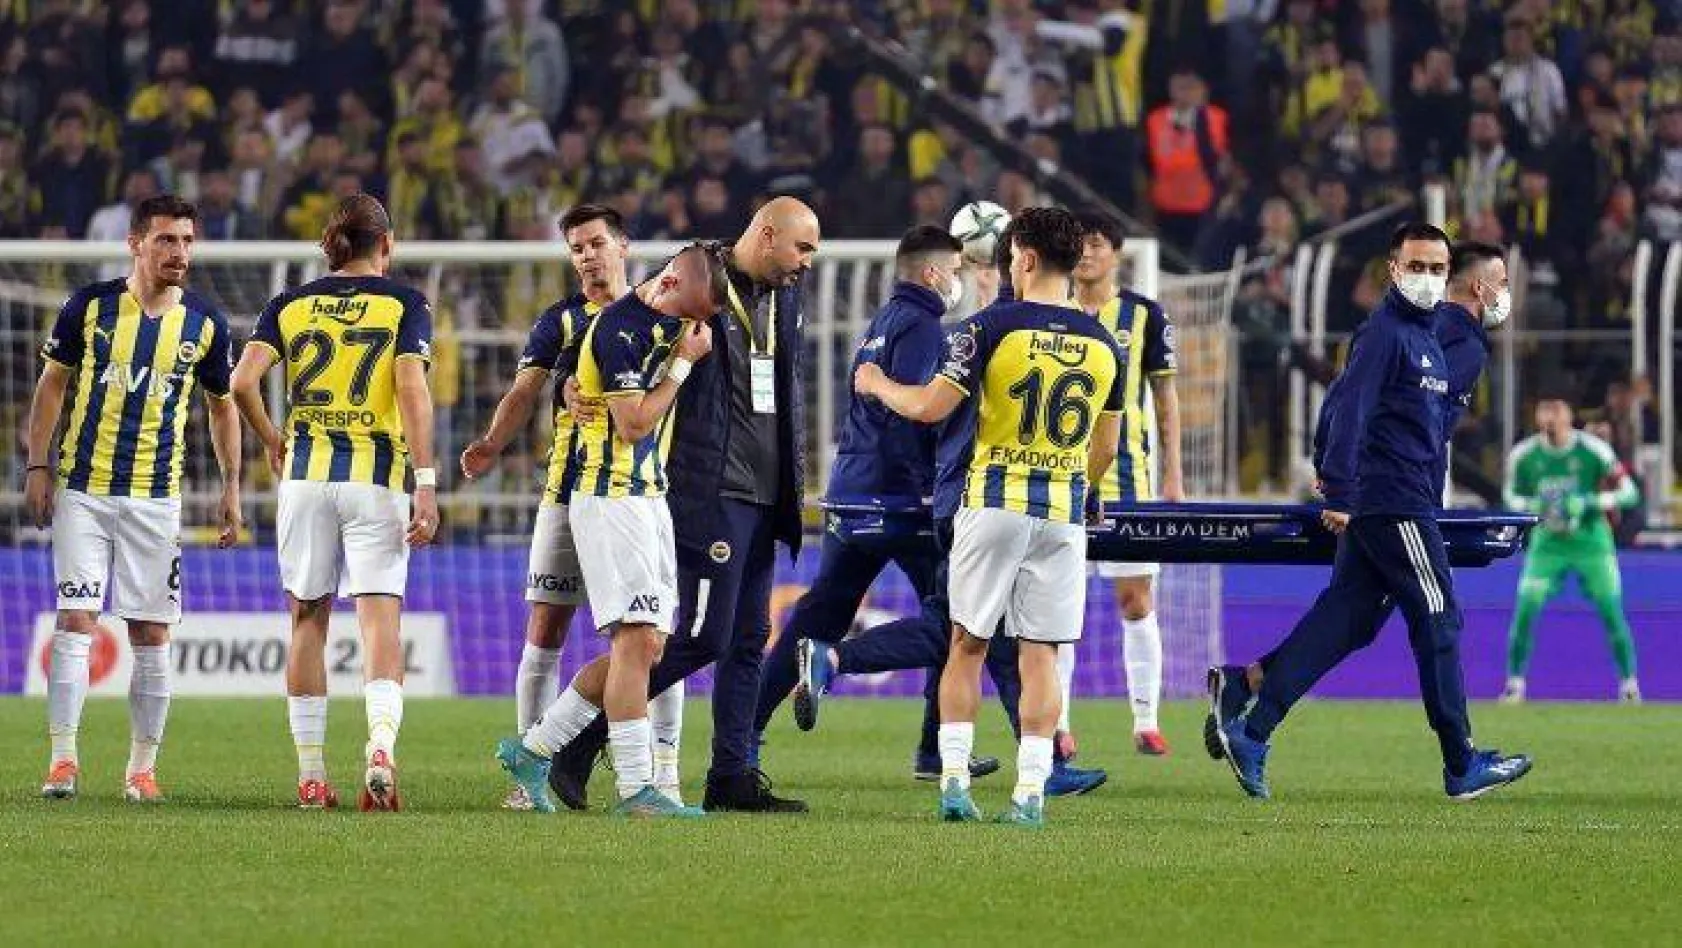 Spor Toto Süper Lig: Fenerbahçe: 2 - Göztepe: 0 (Maç sonucu)